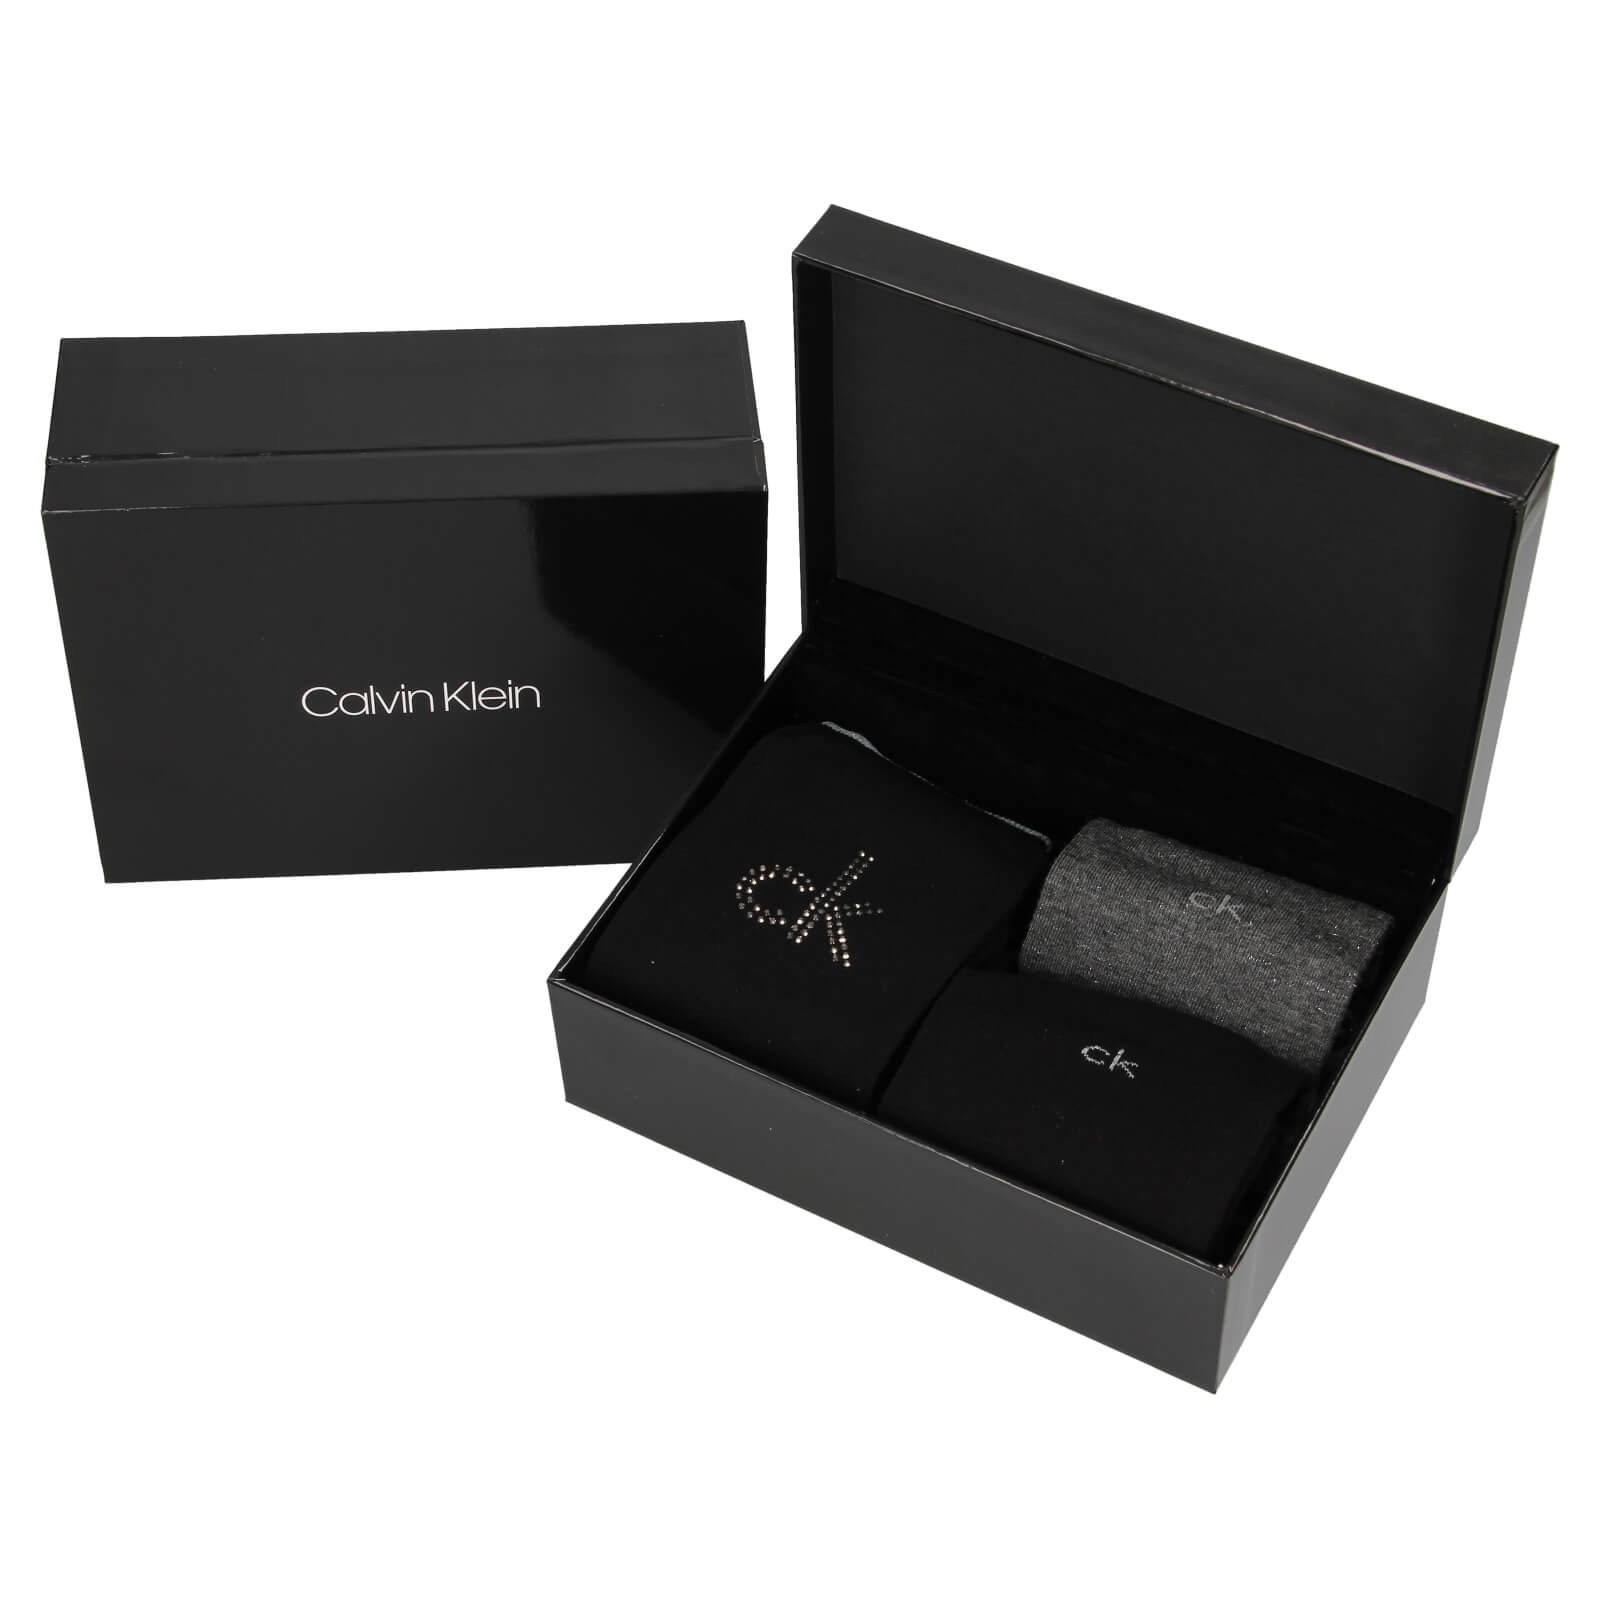 Calvin Klein Amanda zokni ajándék szett - 3 pár